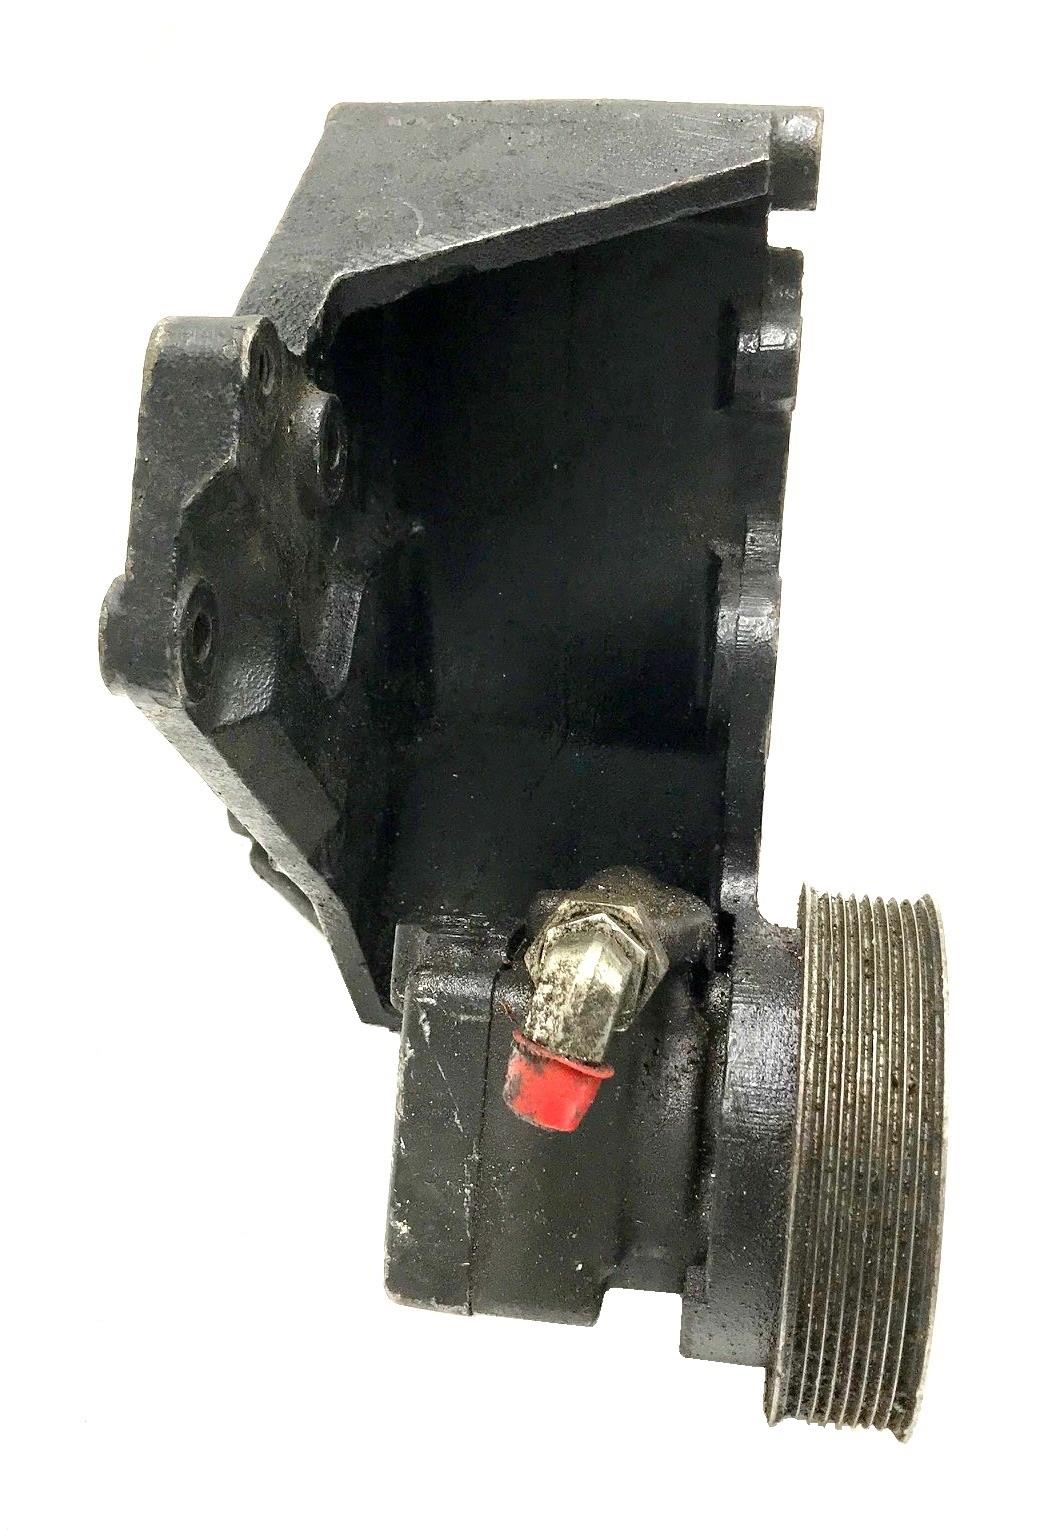 HM-1098 | HM-1098  Power Steering Pump With Mounting Bracket HMMWV  (4)(USED).jpg